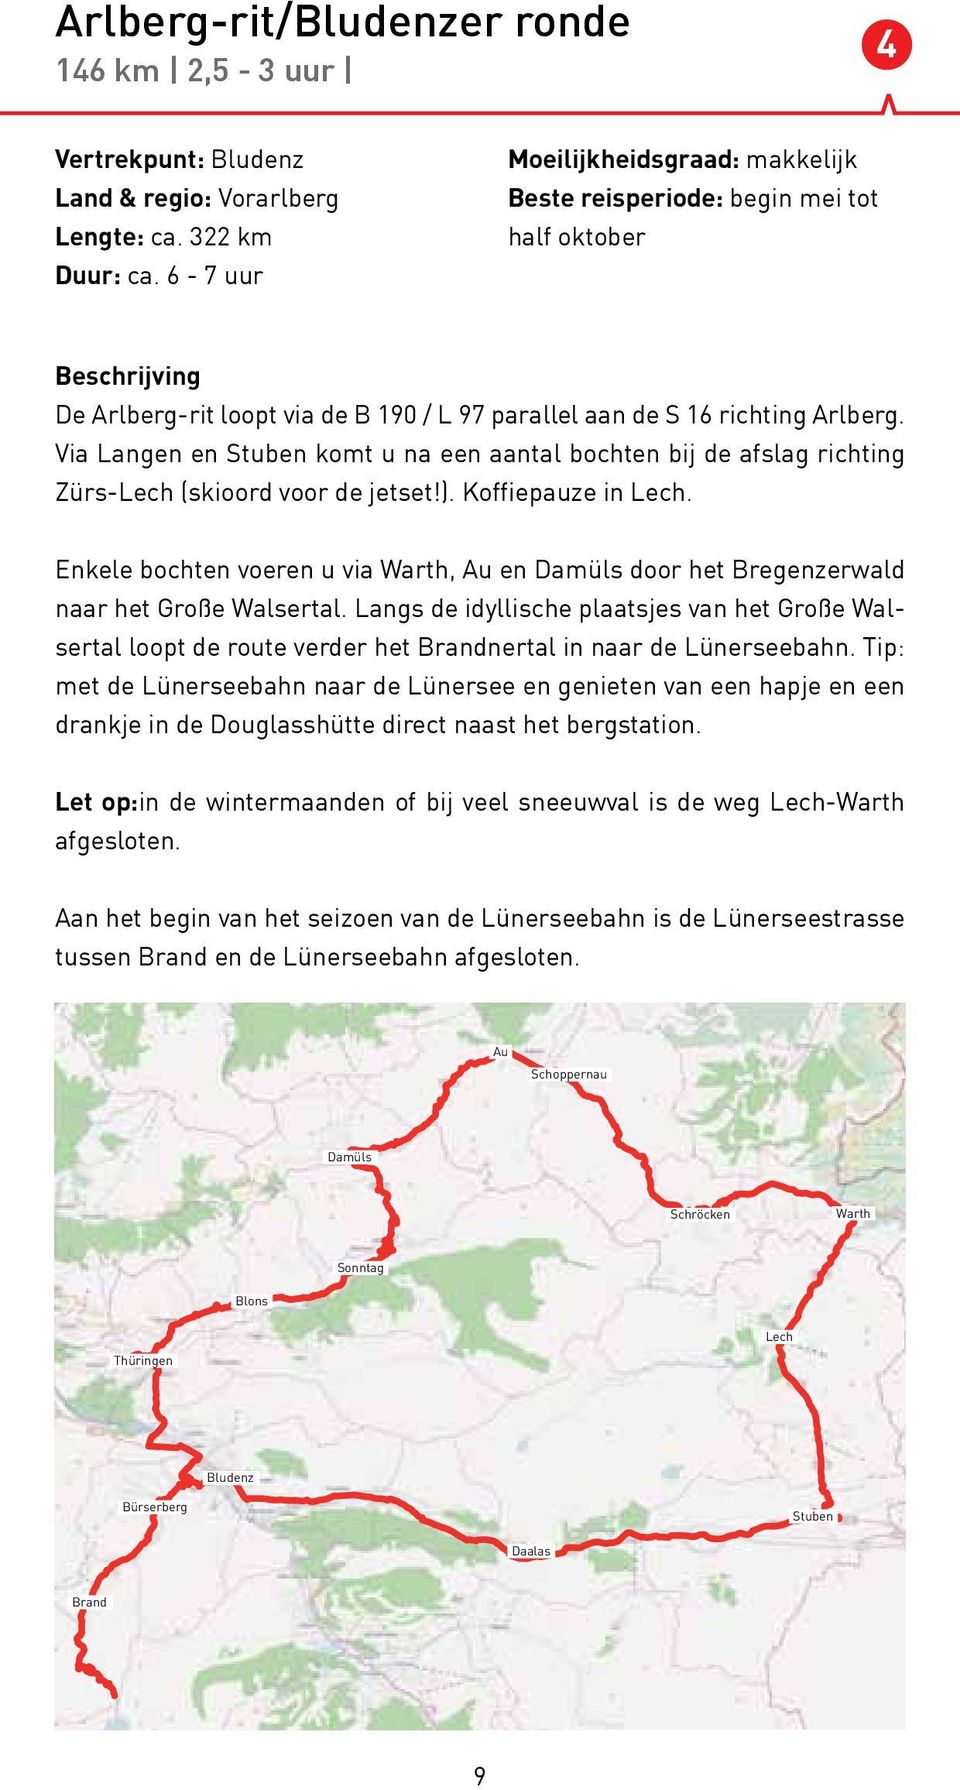 Via Langen en Stuben komt u na een aantal bochten bij de afslag richting Zürs-Lech (skioord voor de jetset!). Koffiepauze in Lech.